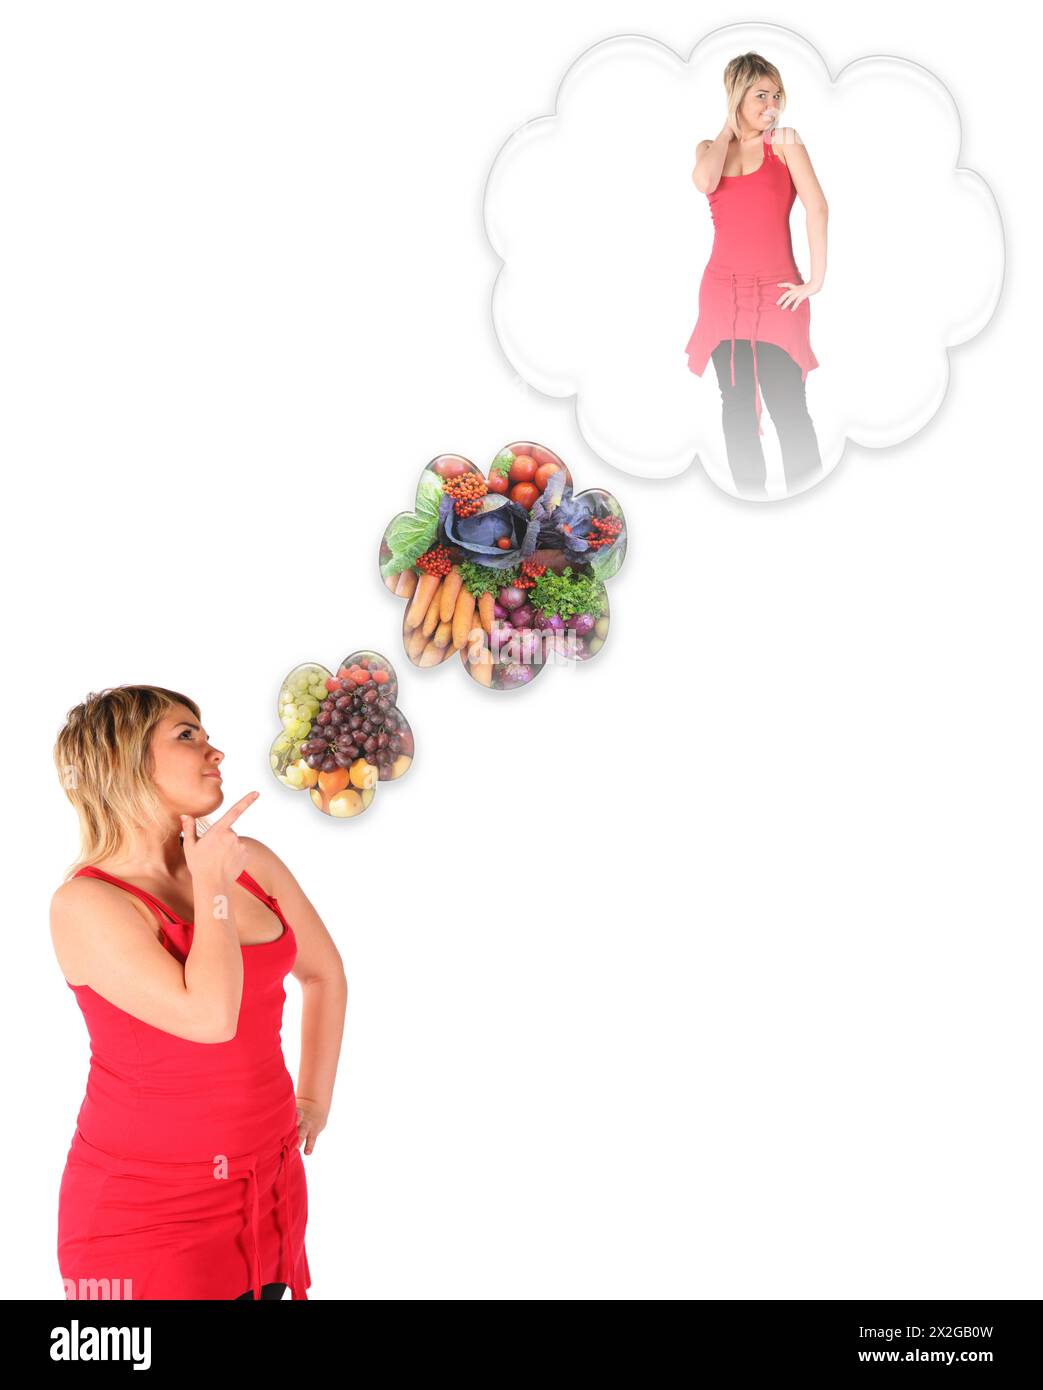 plumpy, junges Mädchen, das an schlanken Körper denkt, mit einer vegetarischen Diät-Collage Stockfoto